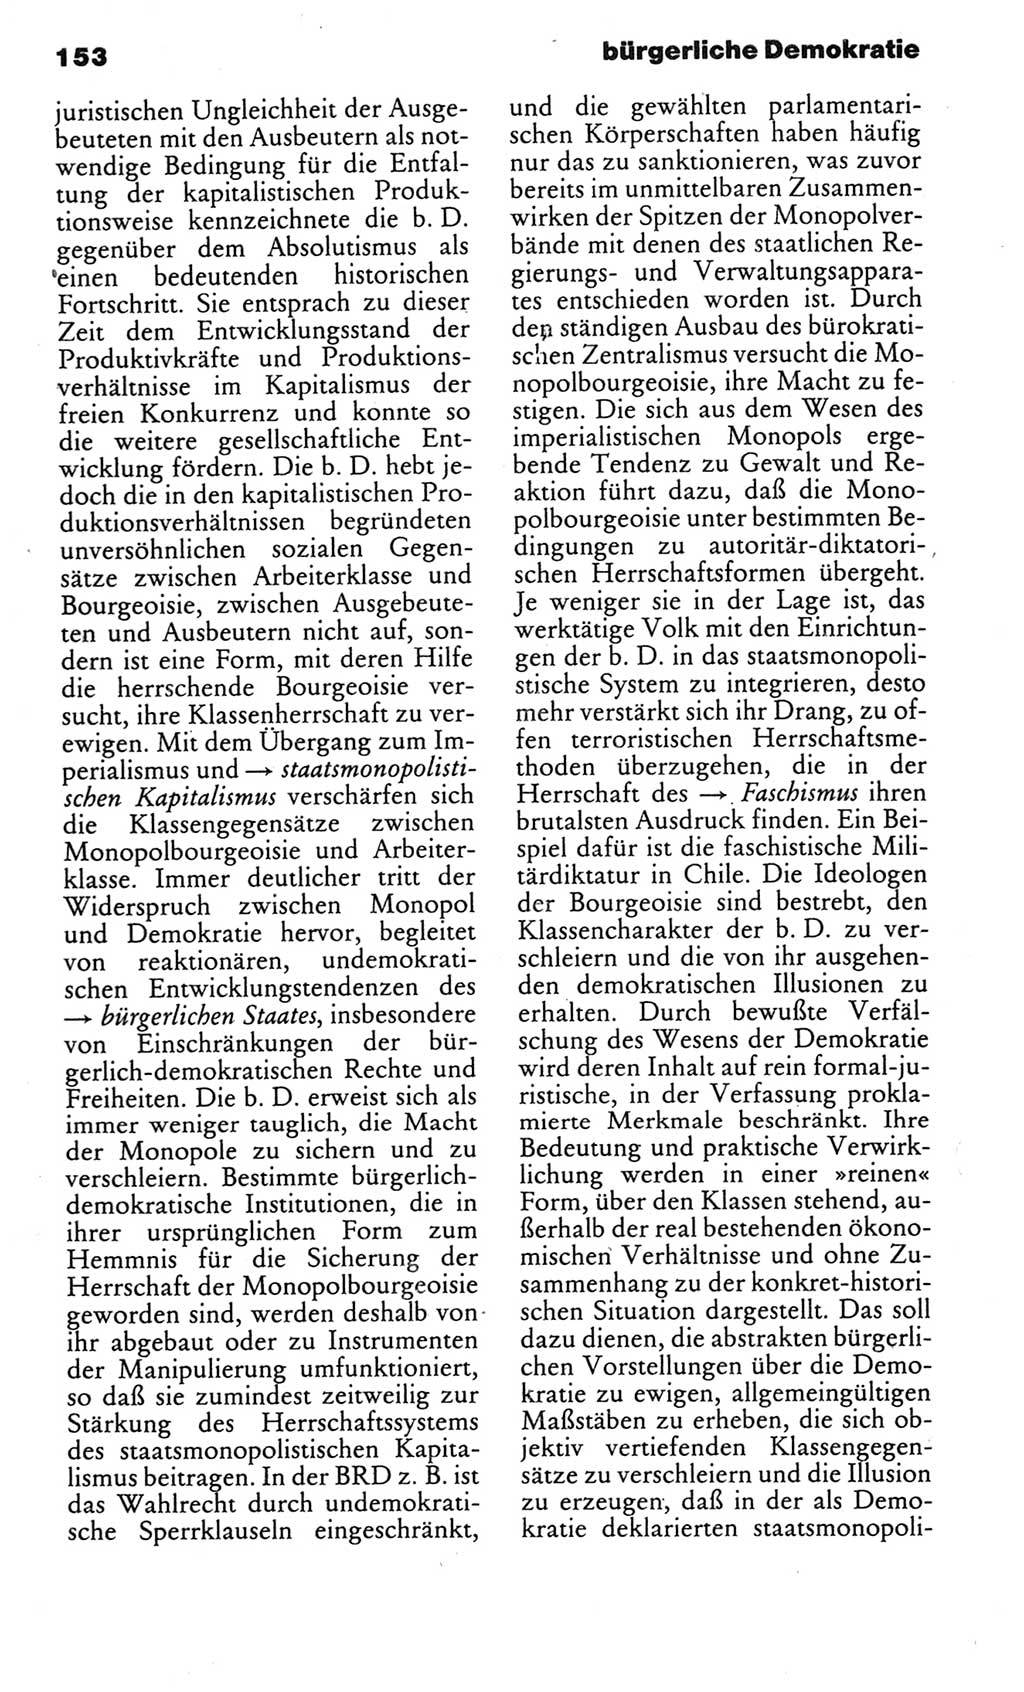 Kleines politisches Wörterbuch [Deutsche Demokratische Republik (DDR)] 1983, Seite 153 (Kl. pol. Wb. DDR 1983, S. 153)